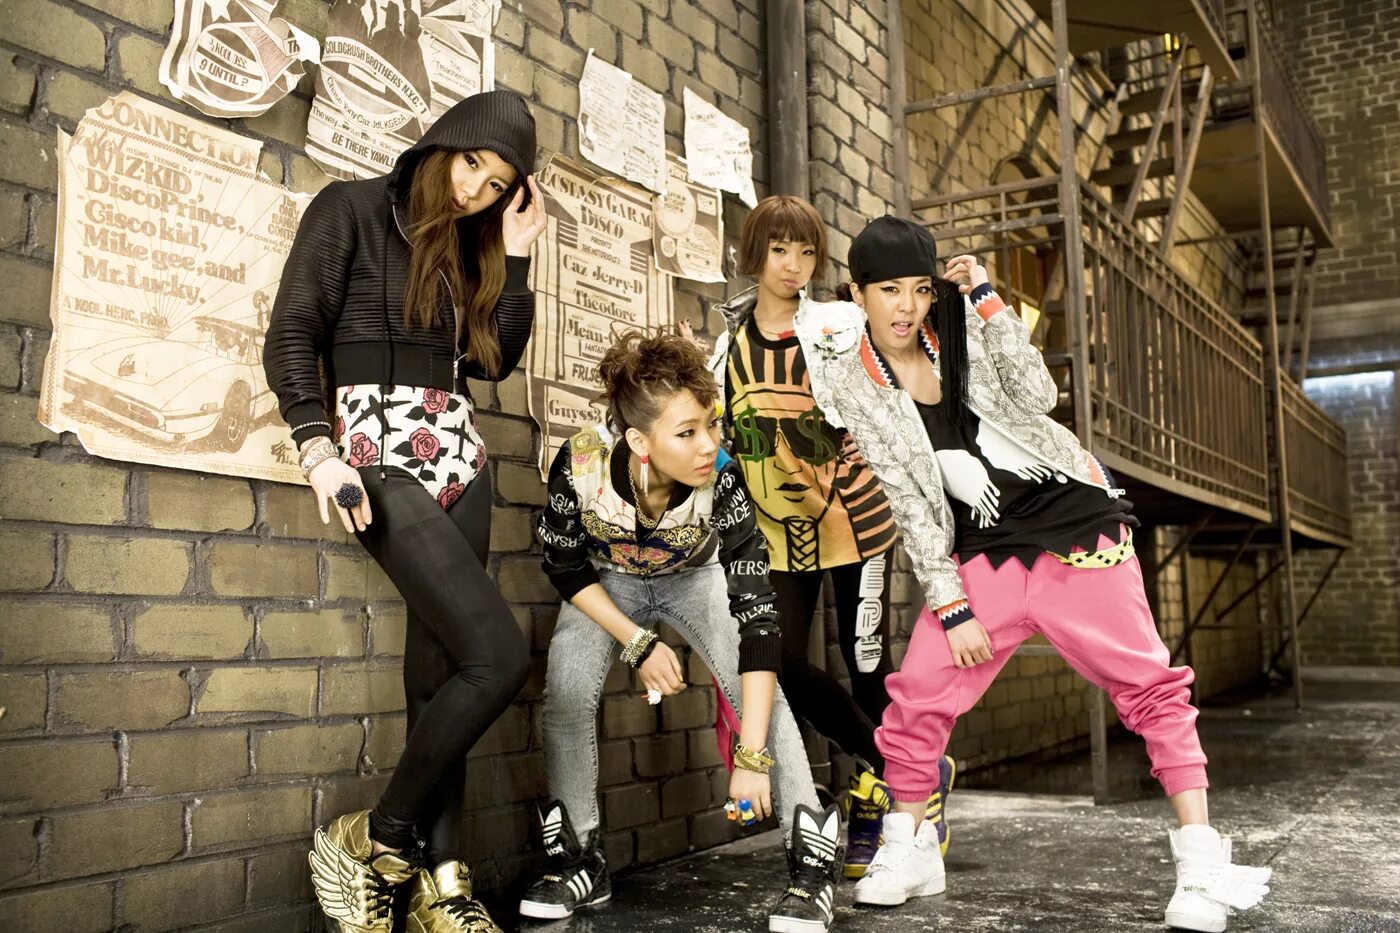 2ne1 корейский музыкальная группа. Хип хоп субкультура стиль одежды. Корейская субкультура k-Pop. Корейский хип хоп. Y3k стиль